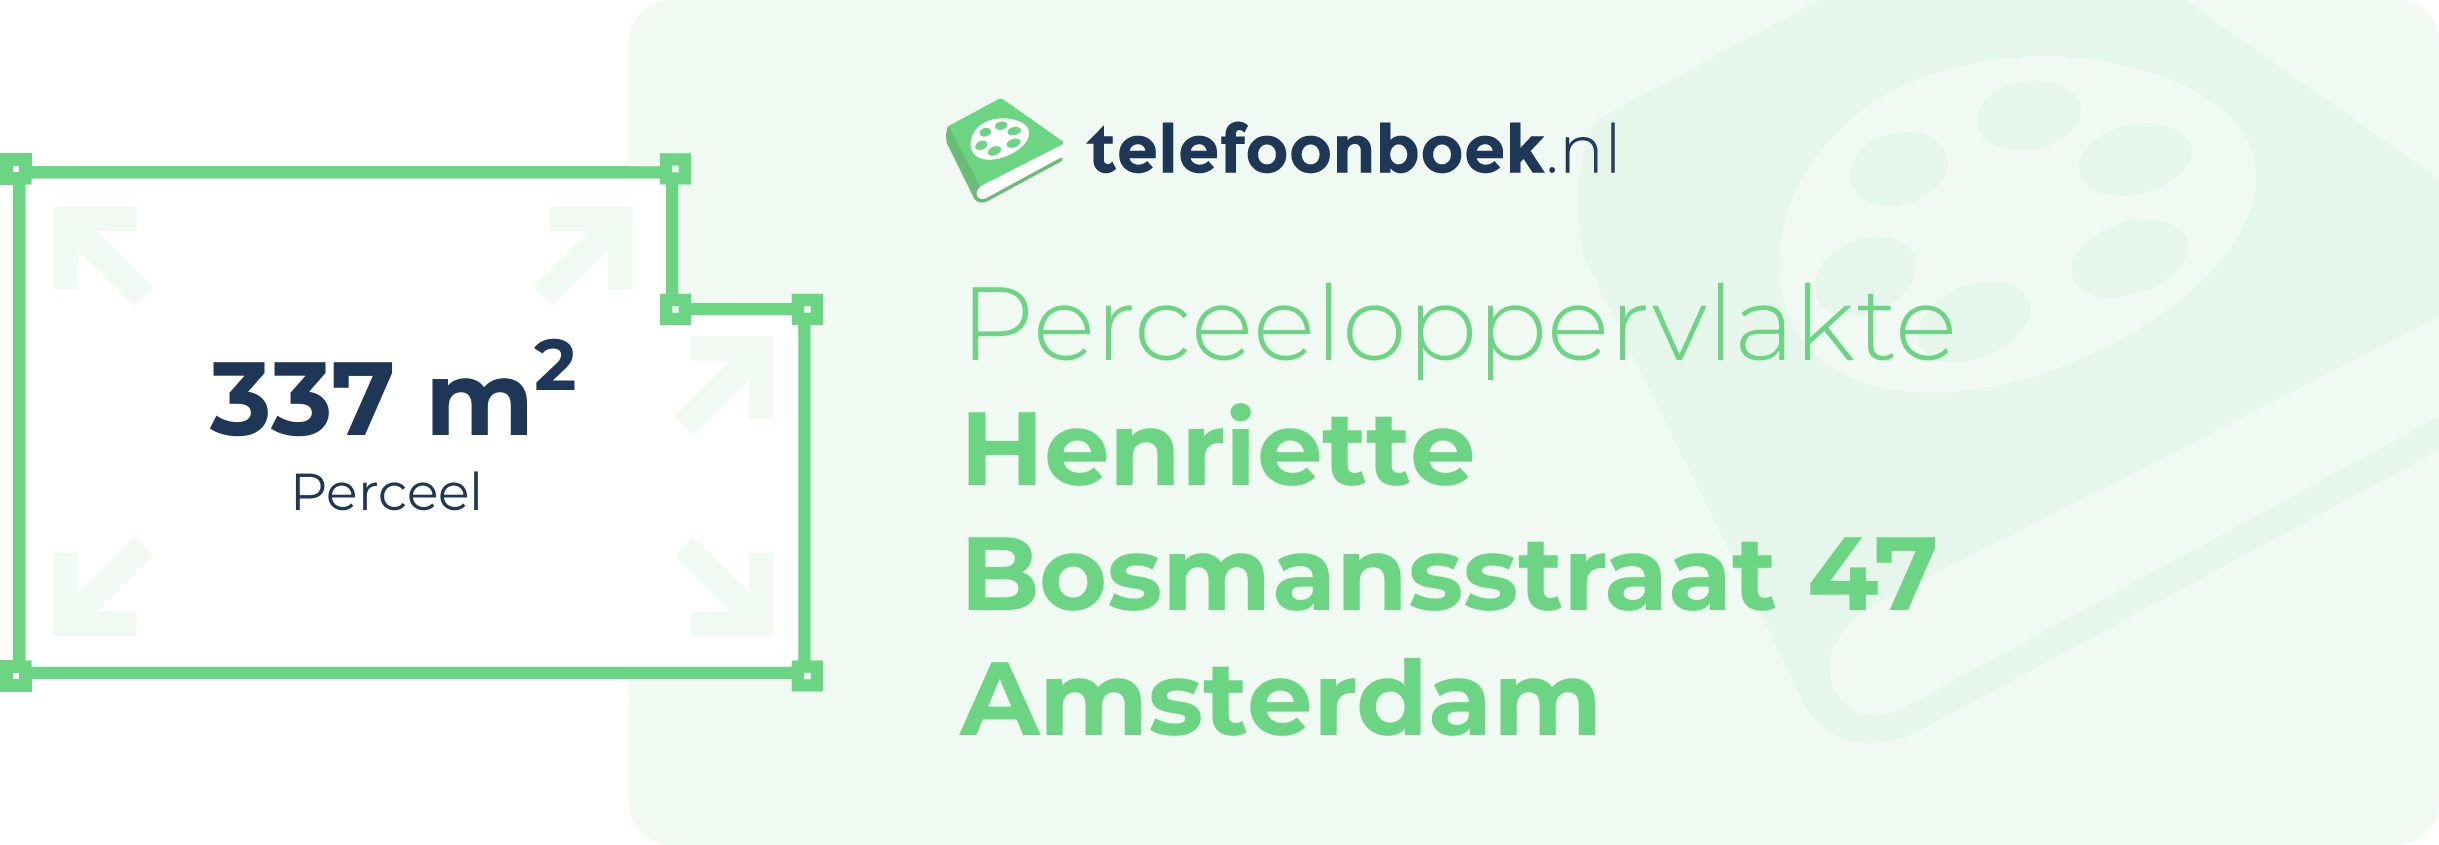 Perceeloppervlakte Henriette Bosmansstraat 47 Amsterdam